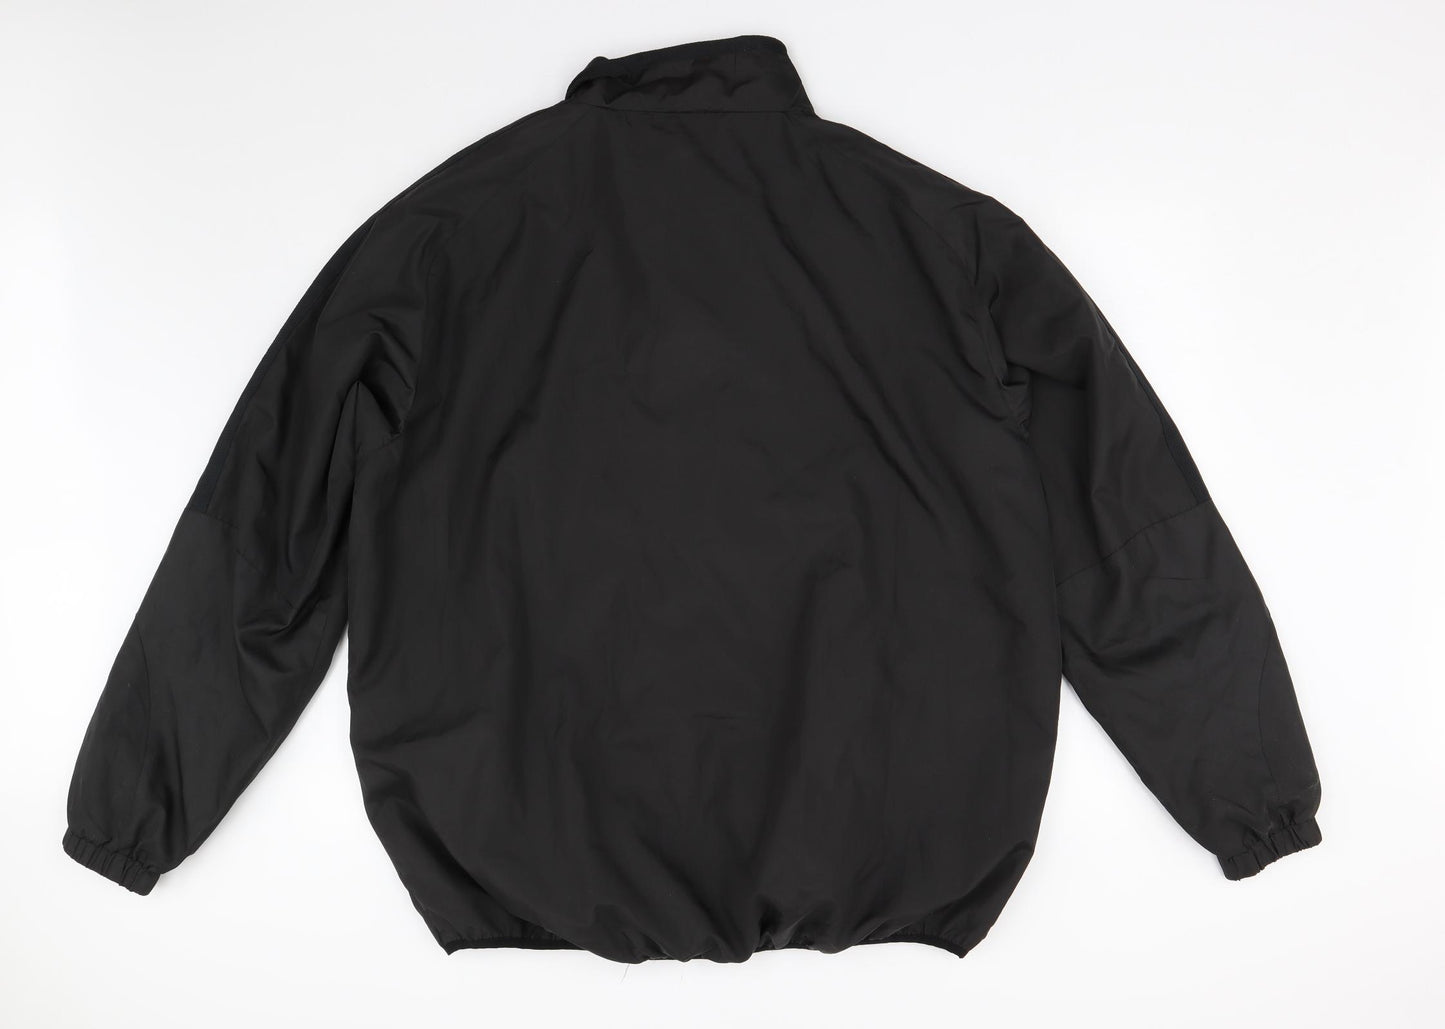 Phase One Mens Black   Jacket  Size XL